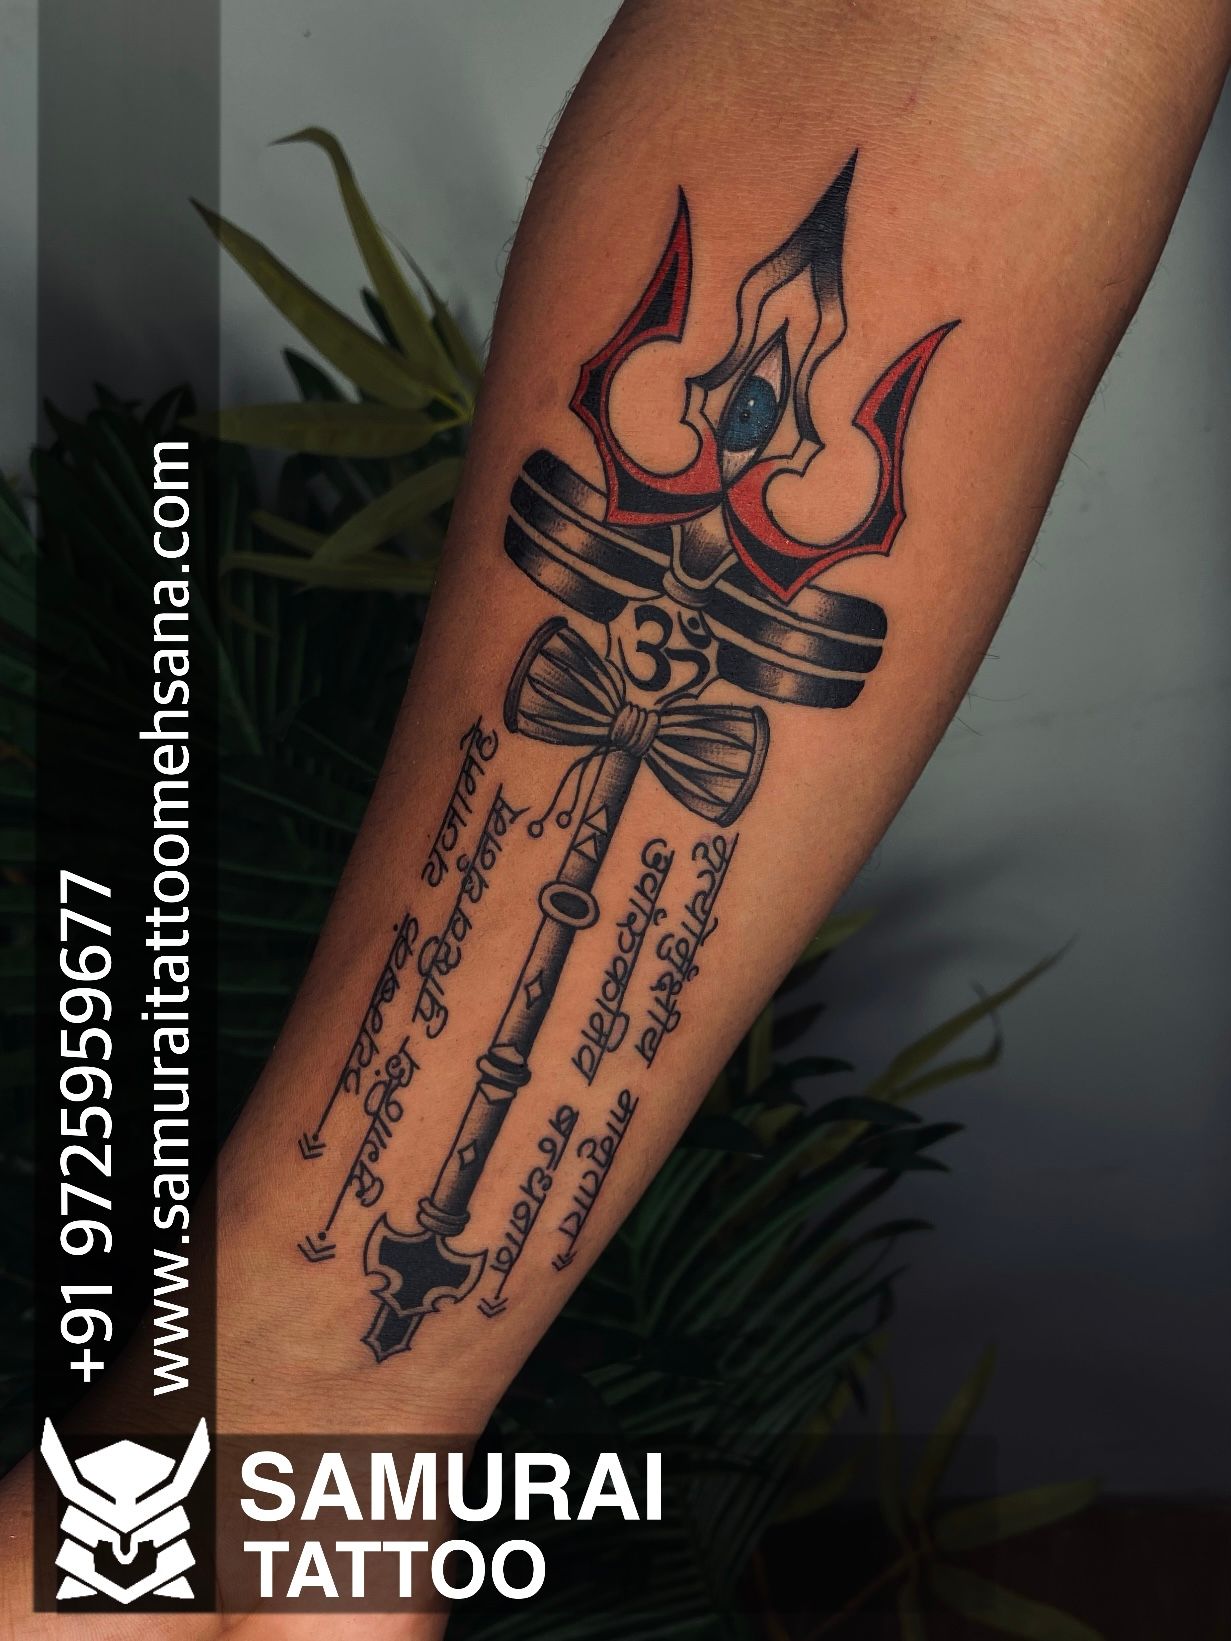 210 OM N TRISHUL tattoo pic ideas | shiva tattoo design, om tattoo, shiva  tattoo